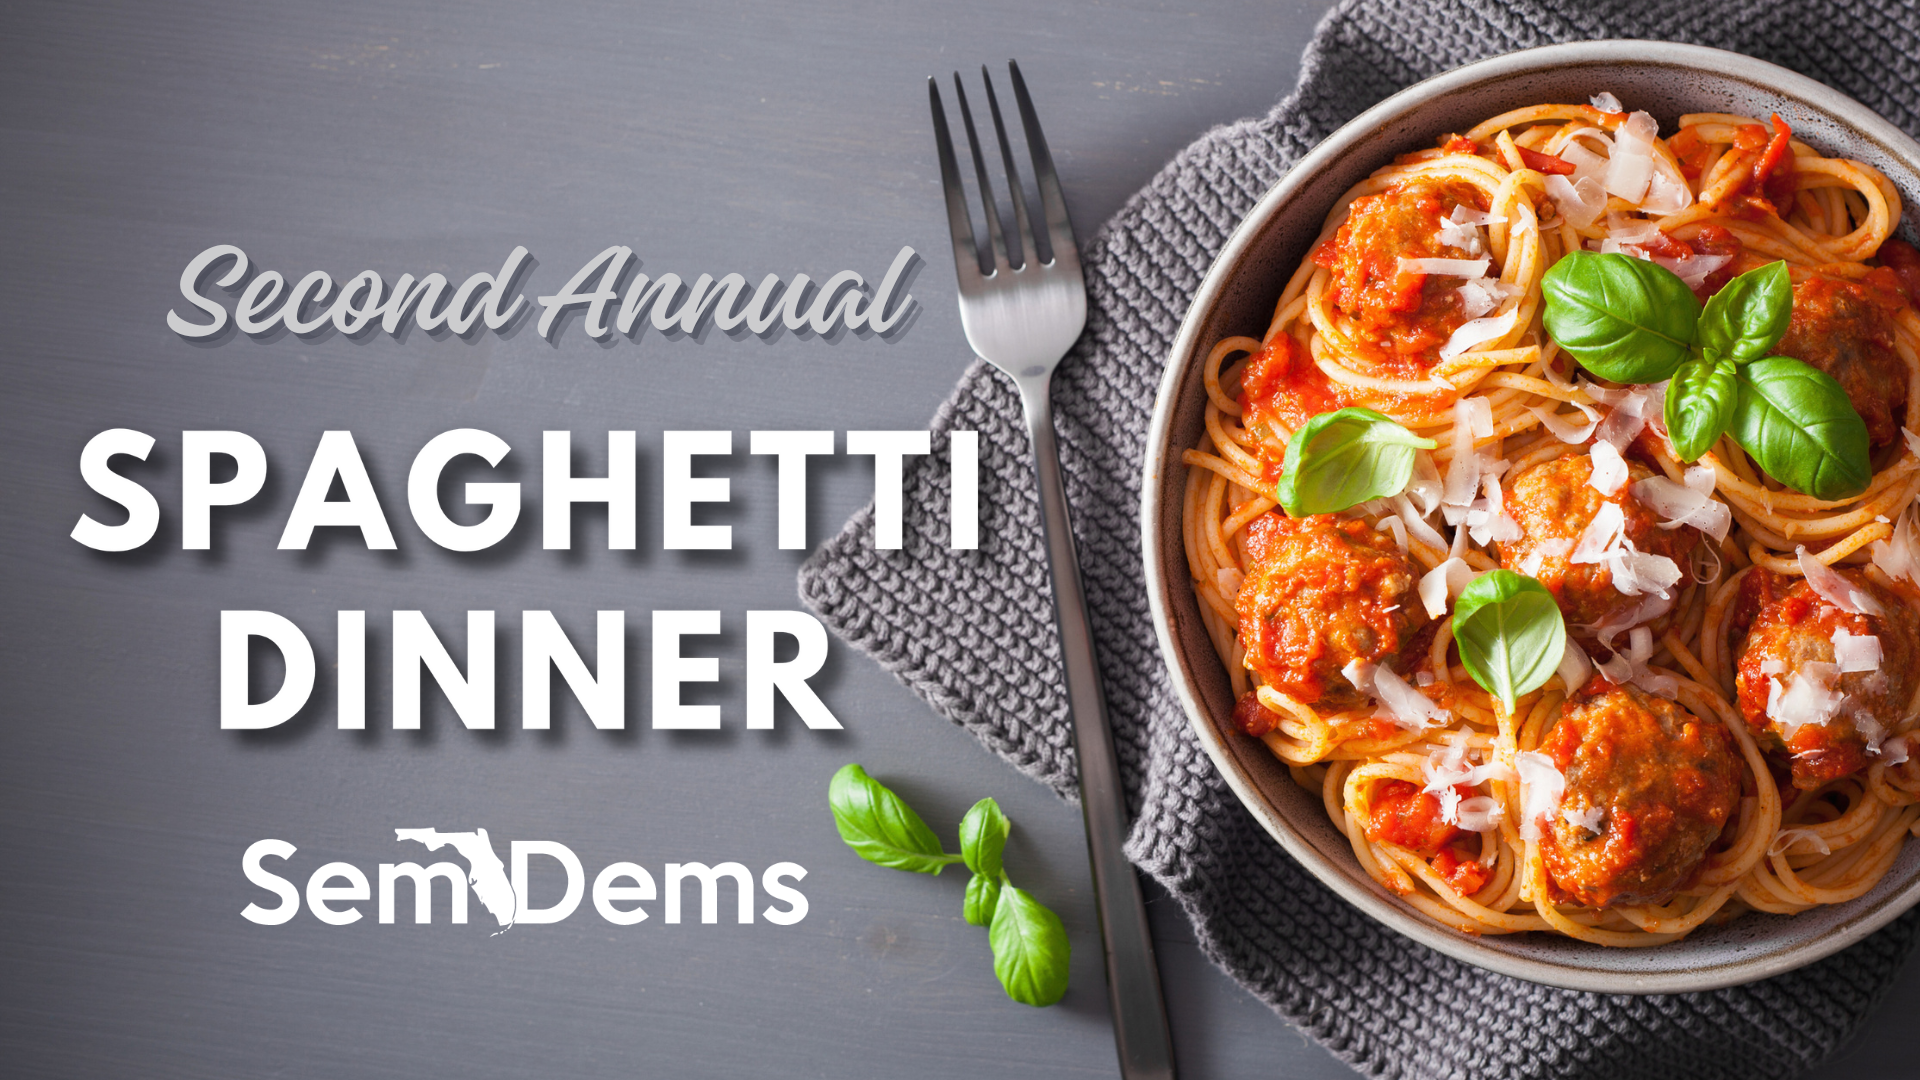 SemDems 2nd Annual Spaghetti Dinner